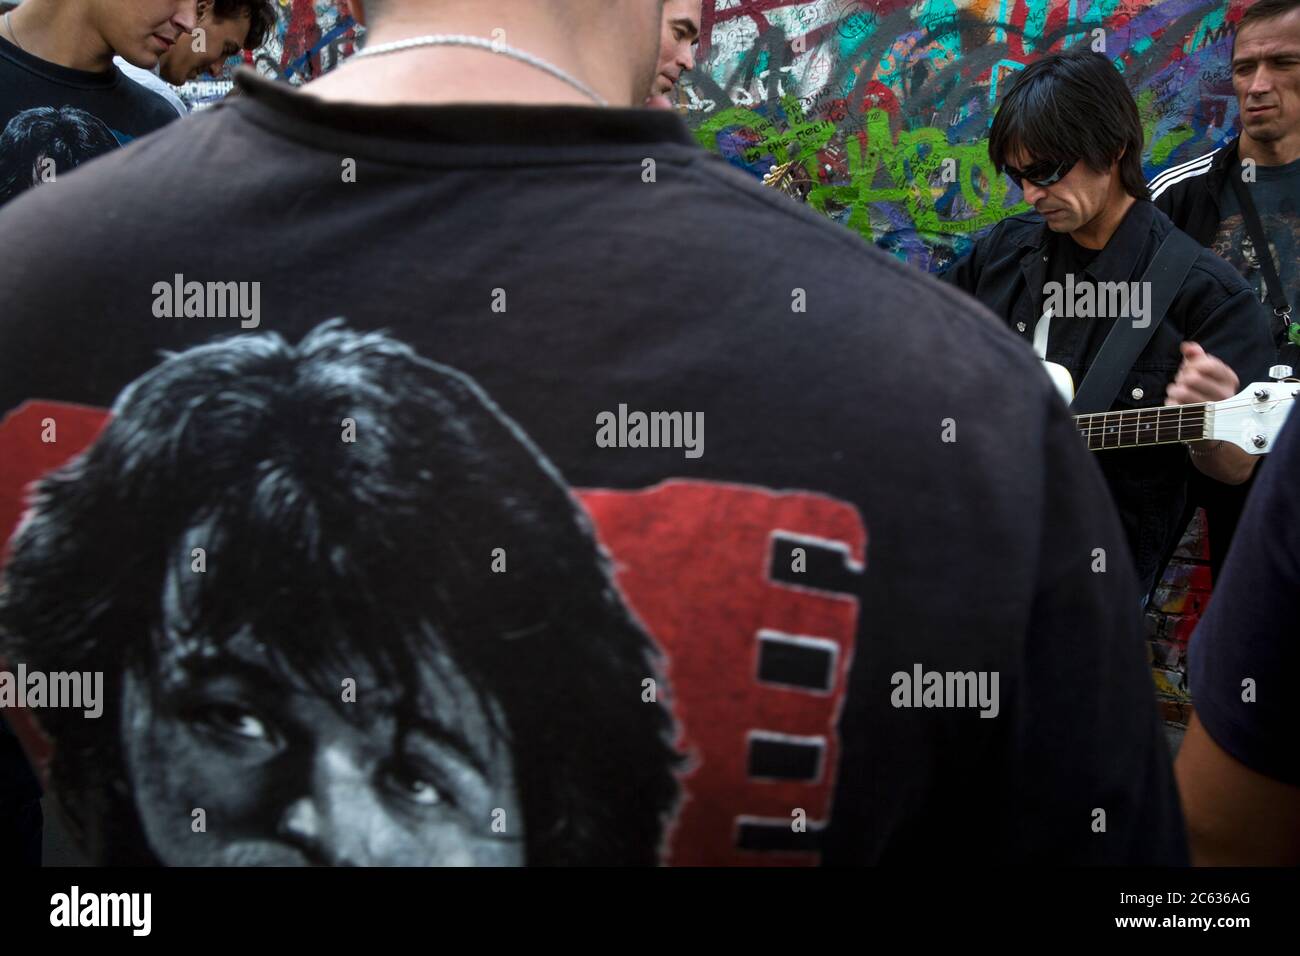 Mosca, Russia. 15 agosto 2015 UN fan di Viktor Tsoi canta una canzone con una chitarra sullo sfondo del Muro di Tsoi in via Arbat a Mosca, il 25° anniversario della morte del cantante, la Russia. Il Muro di Tsoi è un muro coperto di graffiti a Mosca, dedicato al musicista Viktor Tsoi e alla sua band Kino Foto Stock